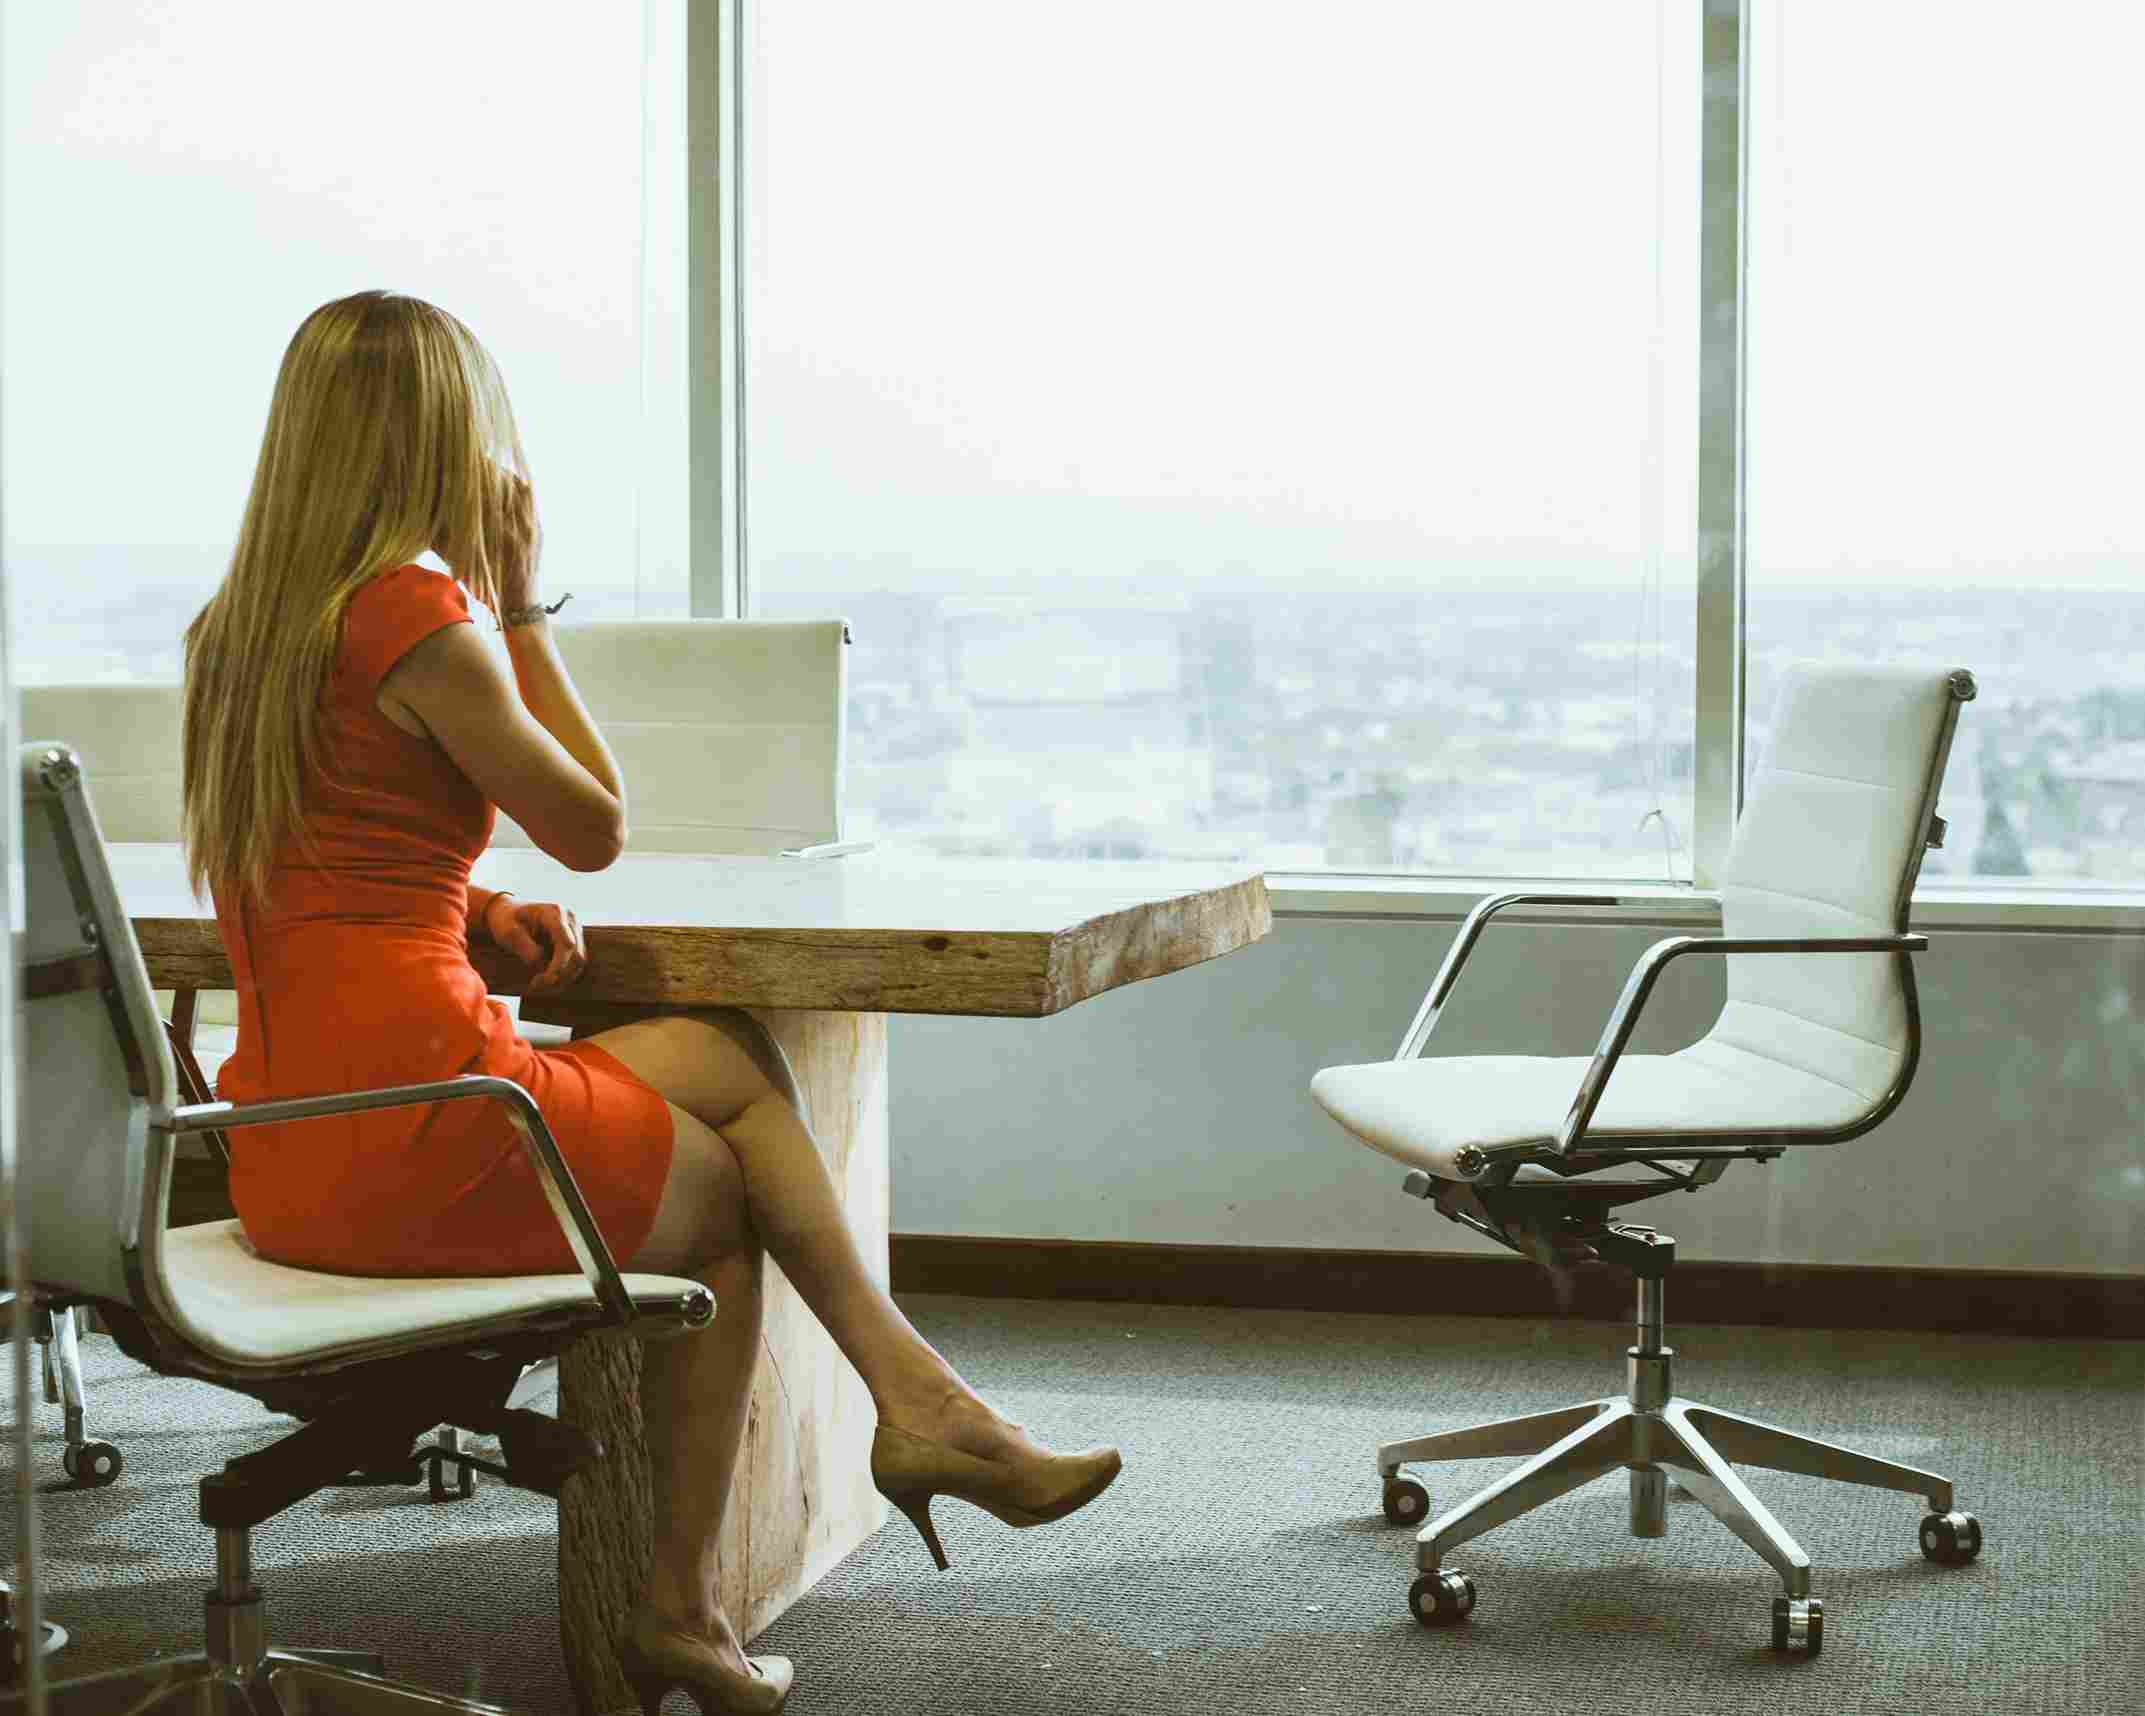 un patron ayant su comment choisir du mobilier ergonomique et une salariée à ses heures de travail assise au téléphone dans son bureau